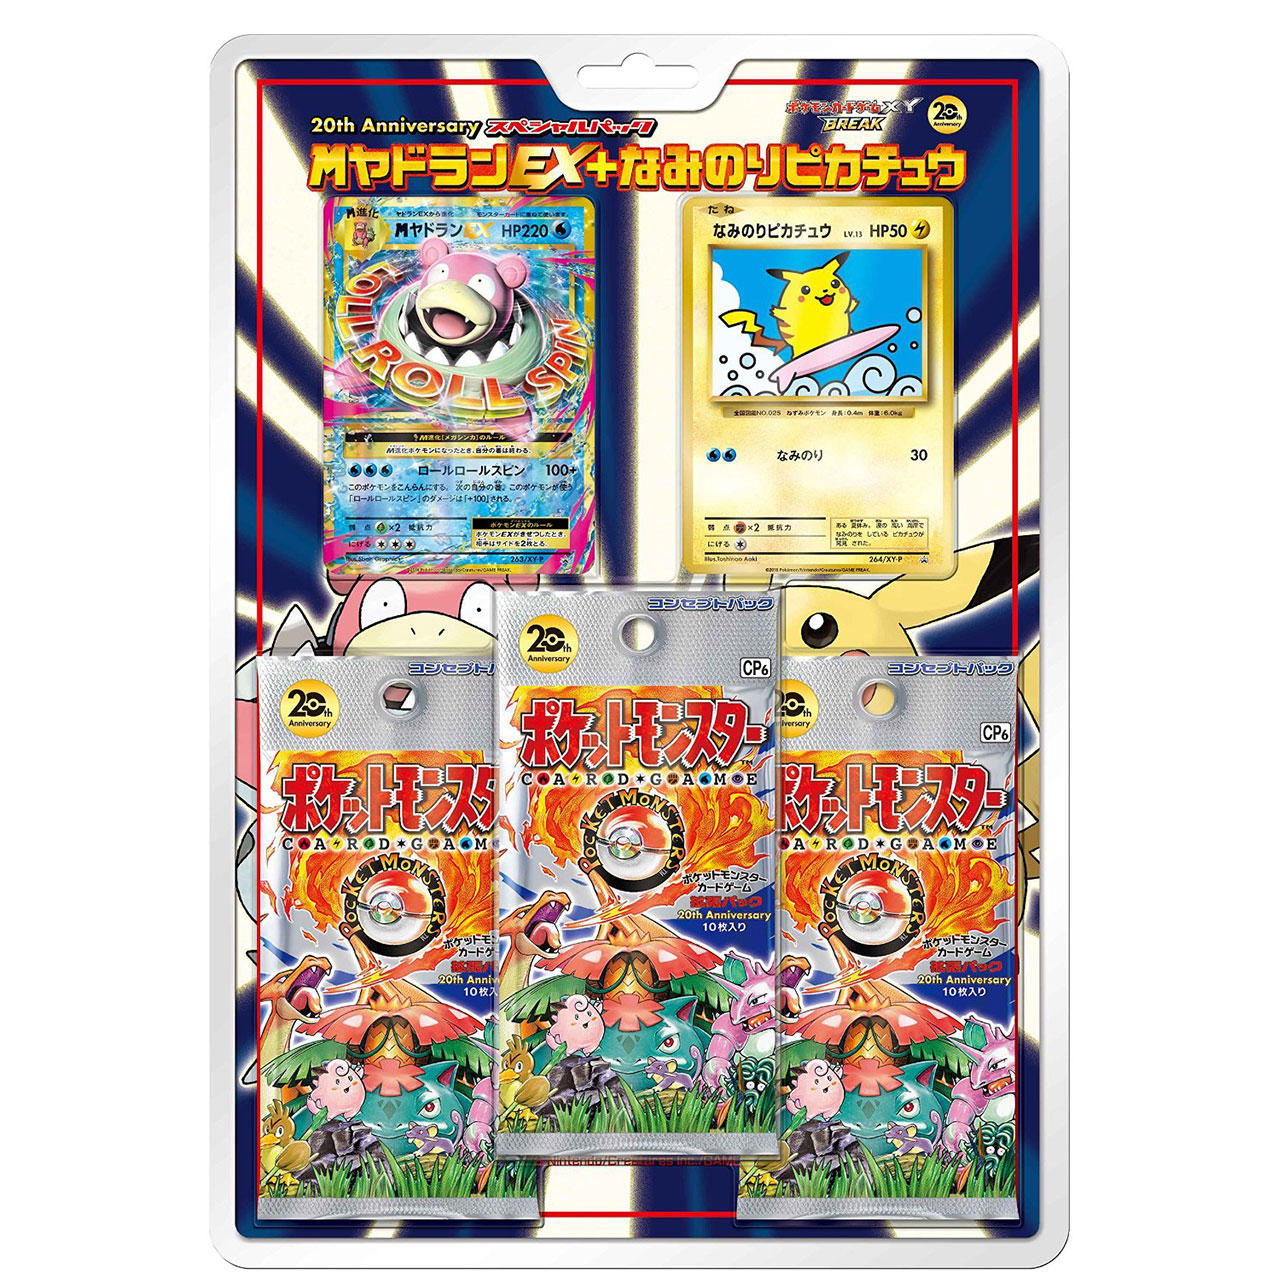 th Anniversary スペシャルパック メガヤドランex なみのりピカチュウ ポケモンカードゲーム公式ホームページ